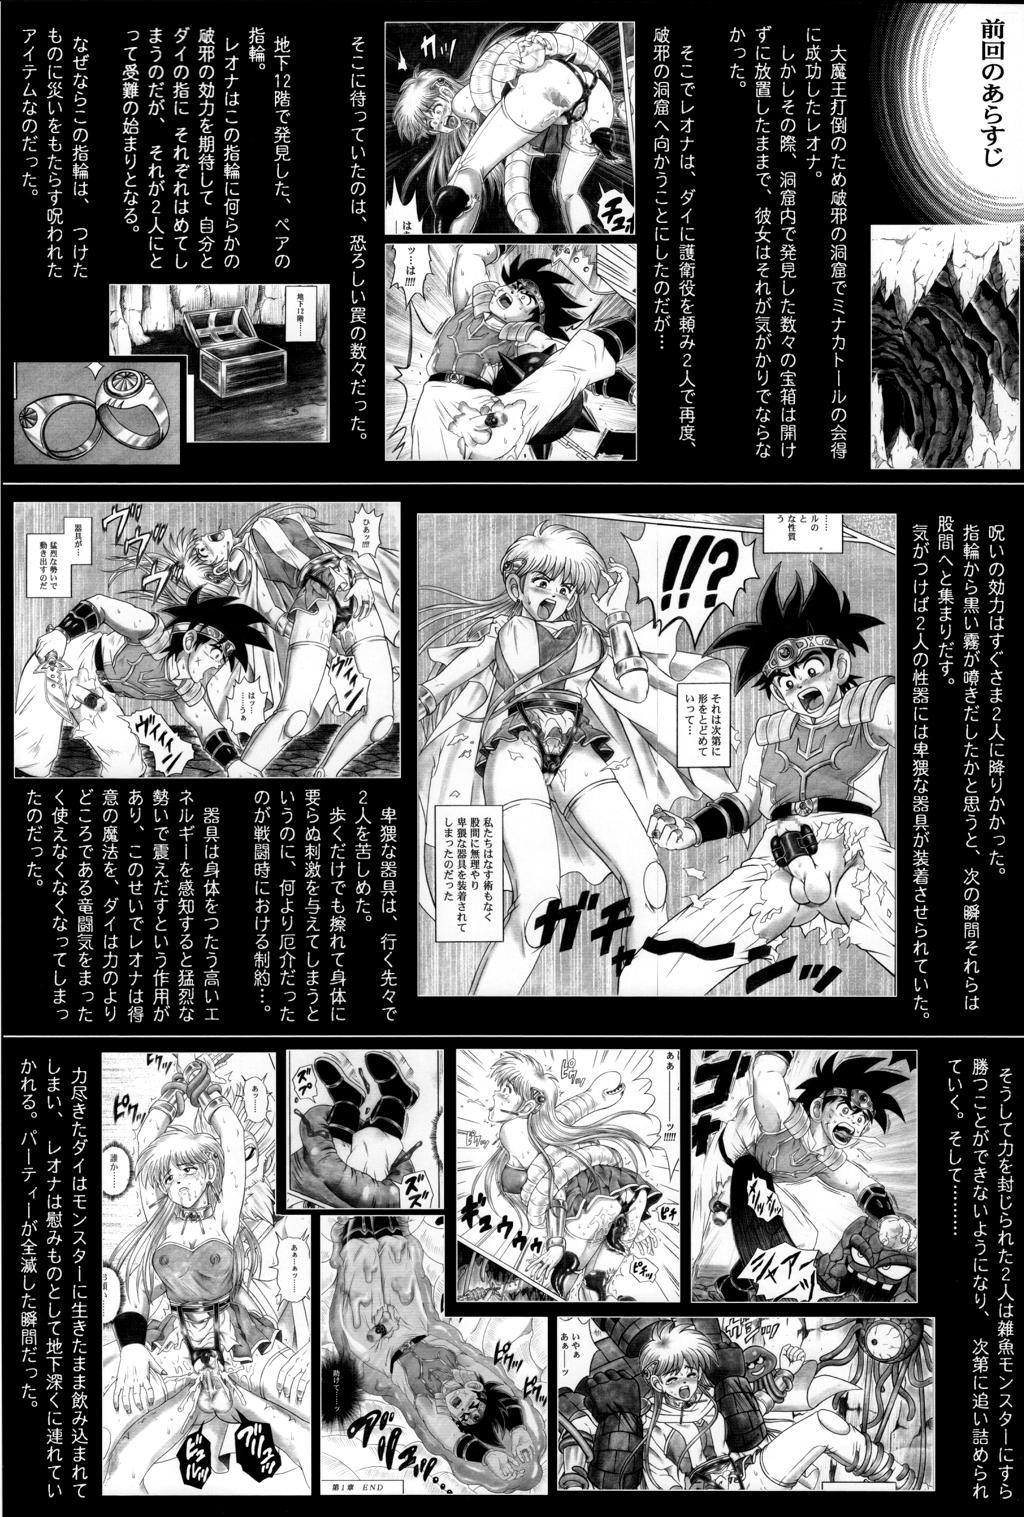 Best Blow Job Ever (C71) [Cyclone (Reizei, Izumi)] STAR TAC IDO ~Youkoso Haja no Doukutsu e~ Dai 4 Shou (Dragon Quest Dai no Daibouken) - Dragon quest dai no daibouken Gaydudes - Page 2